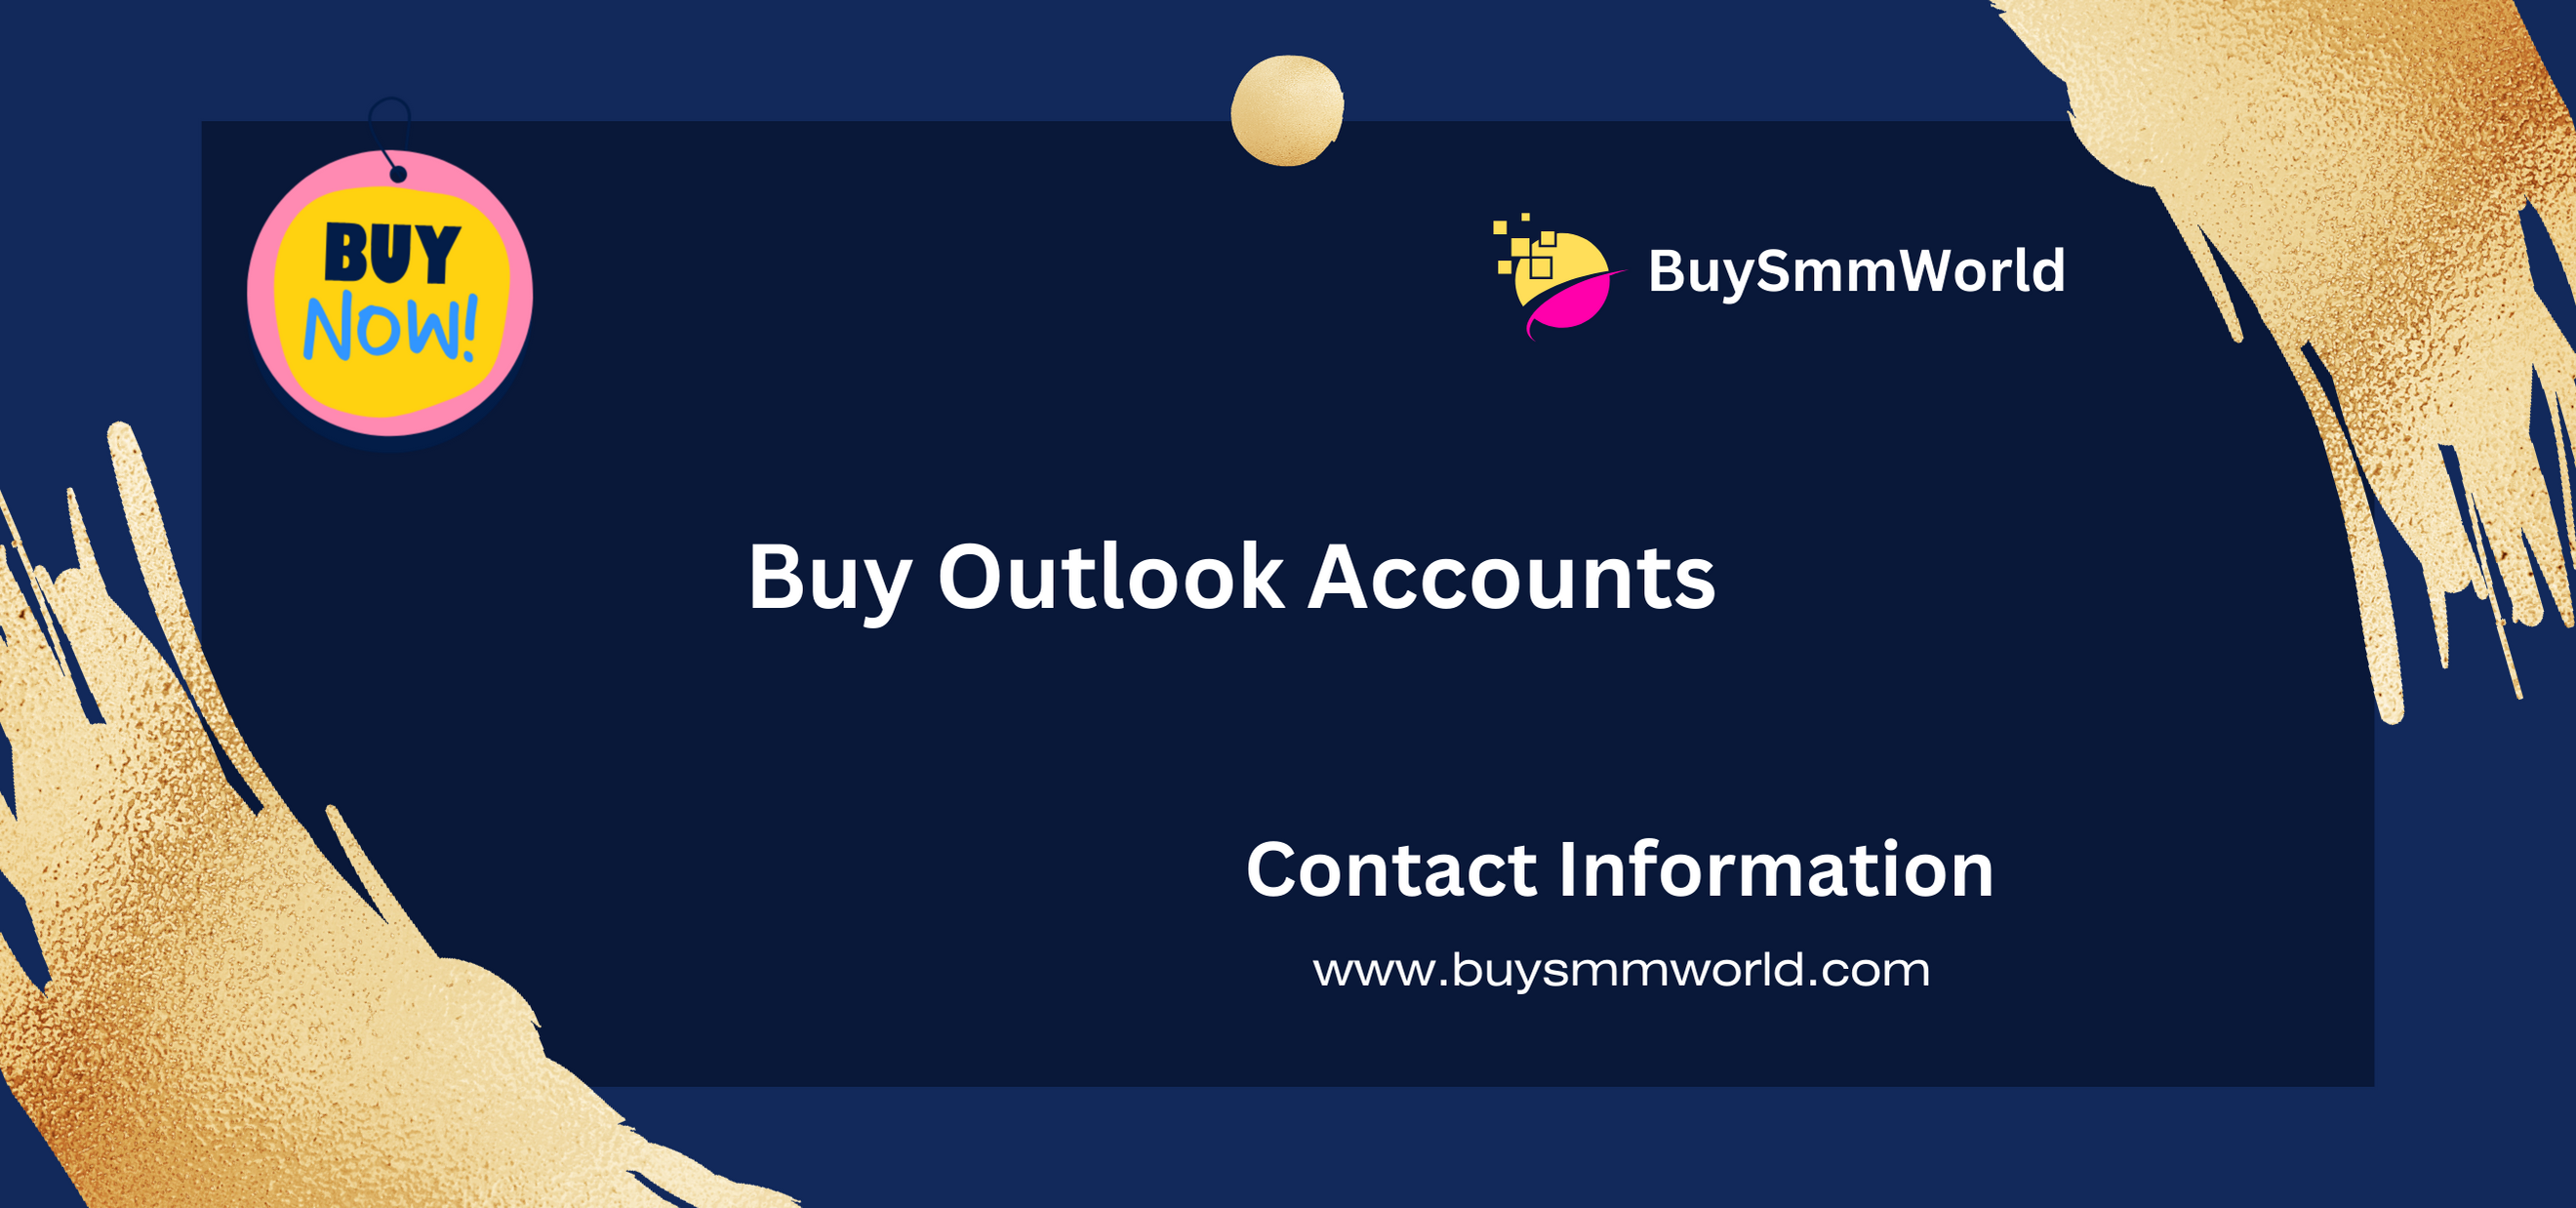 Buy Outlook Accounts